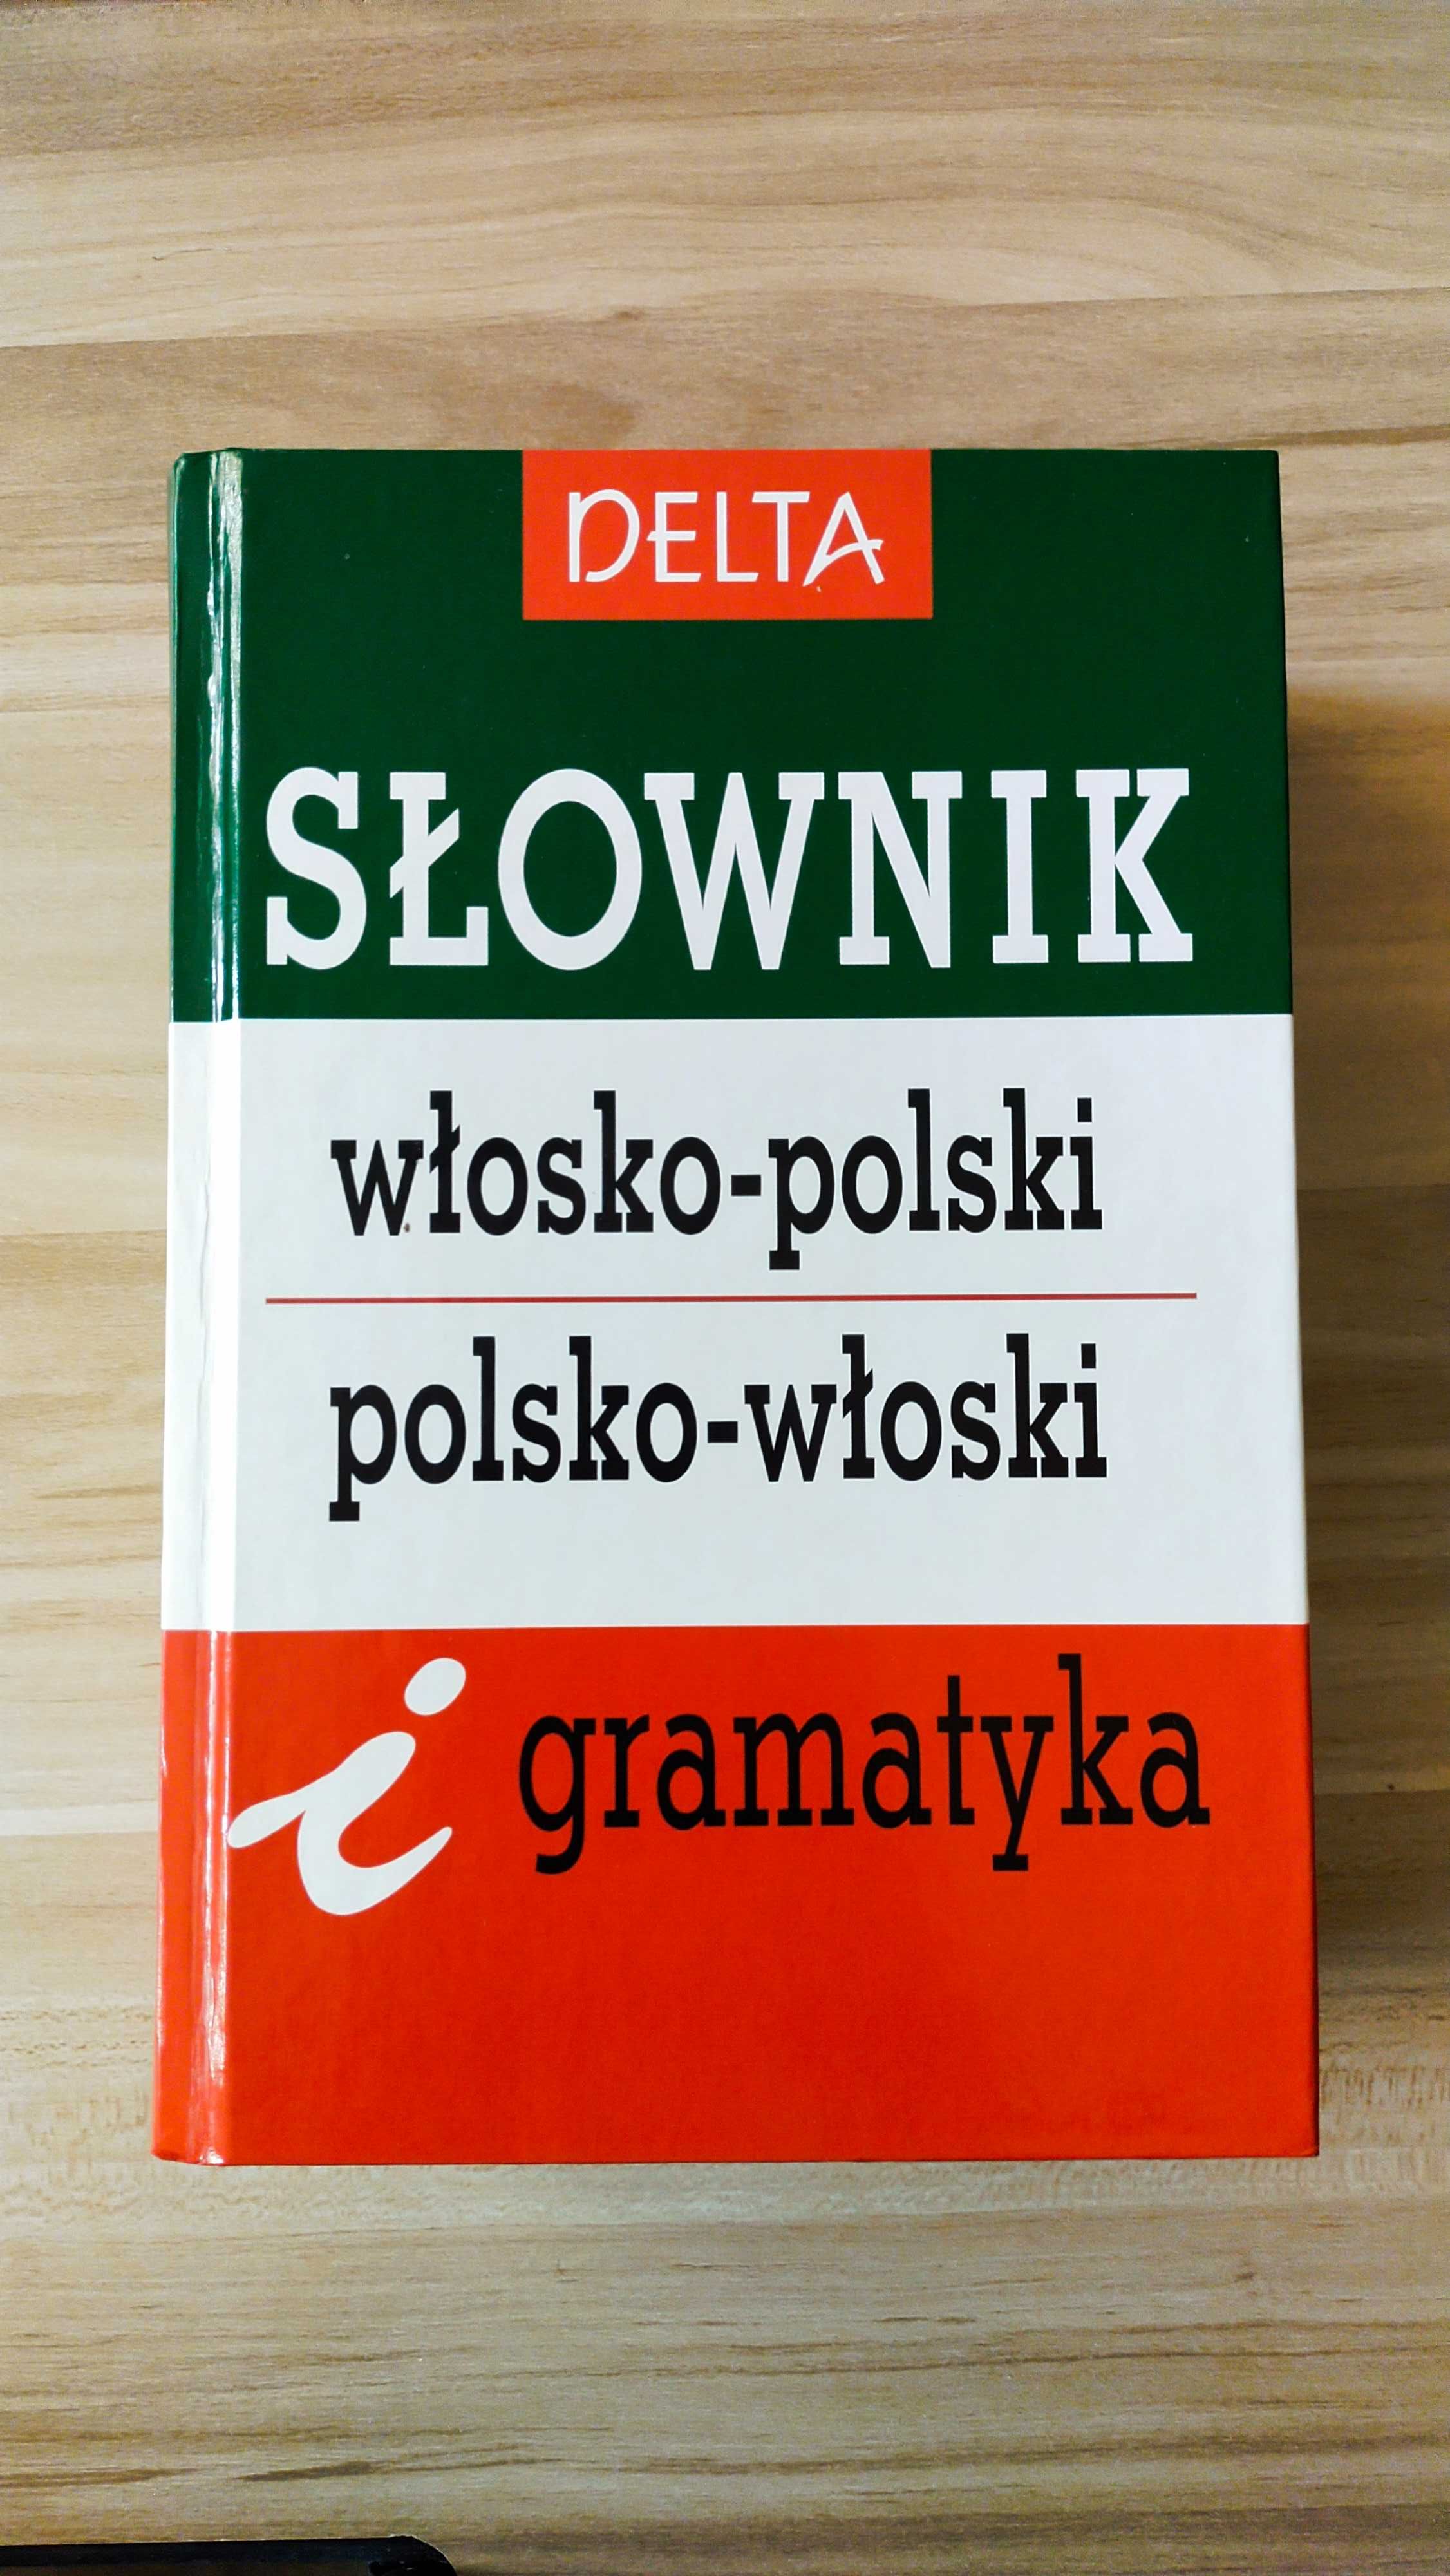 E. Jamrozik / Słownik włosko-polski-włoski i gramatyka / DELTA